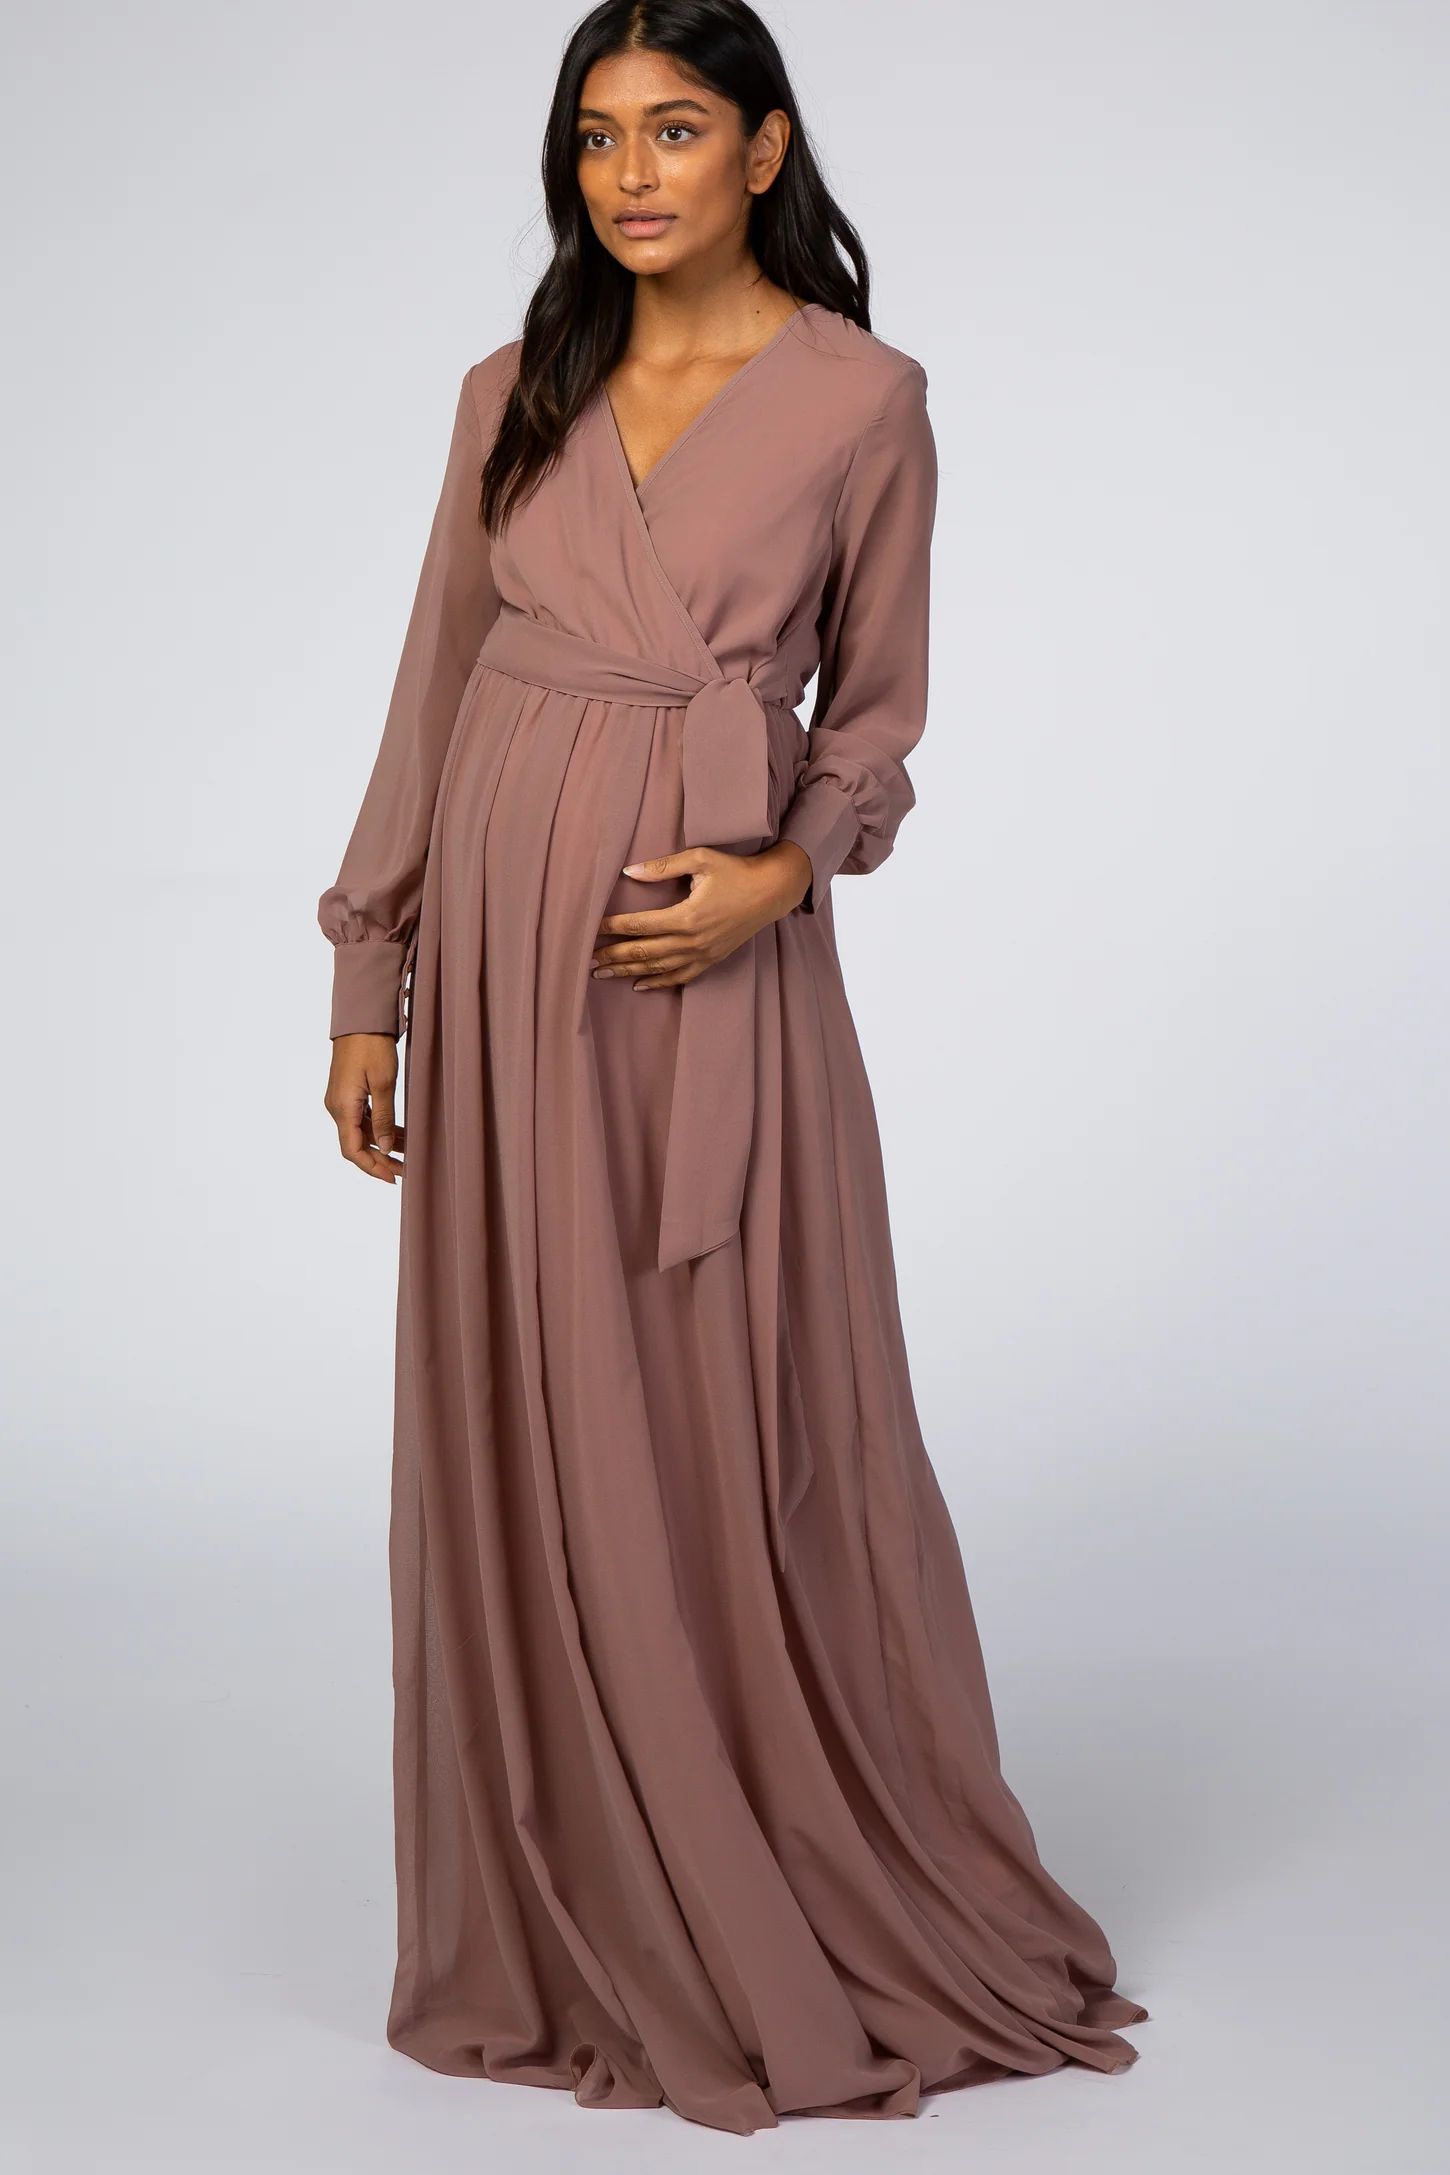 Mauve Chiffon Long Sleeve Maternity Maxi Dress | PinkBlush Maternity